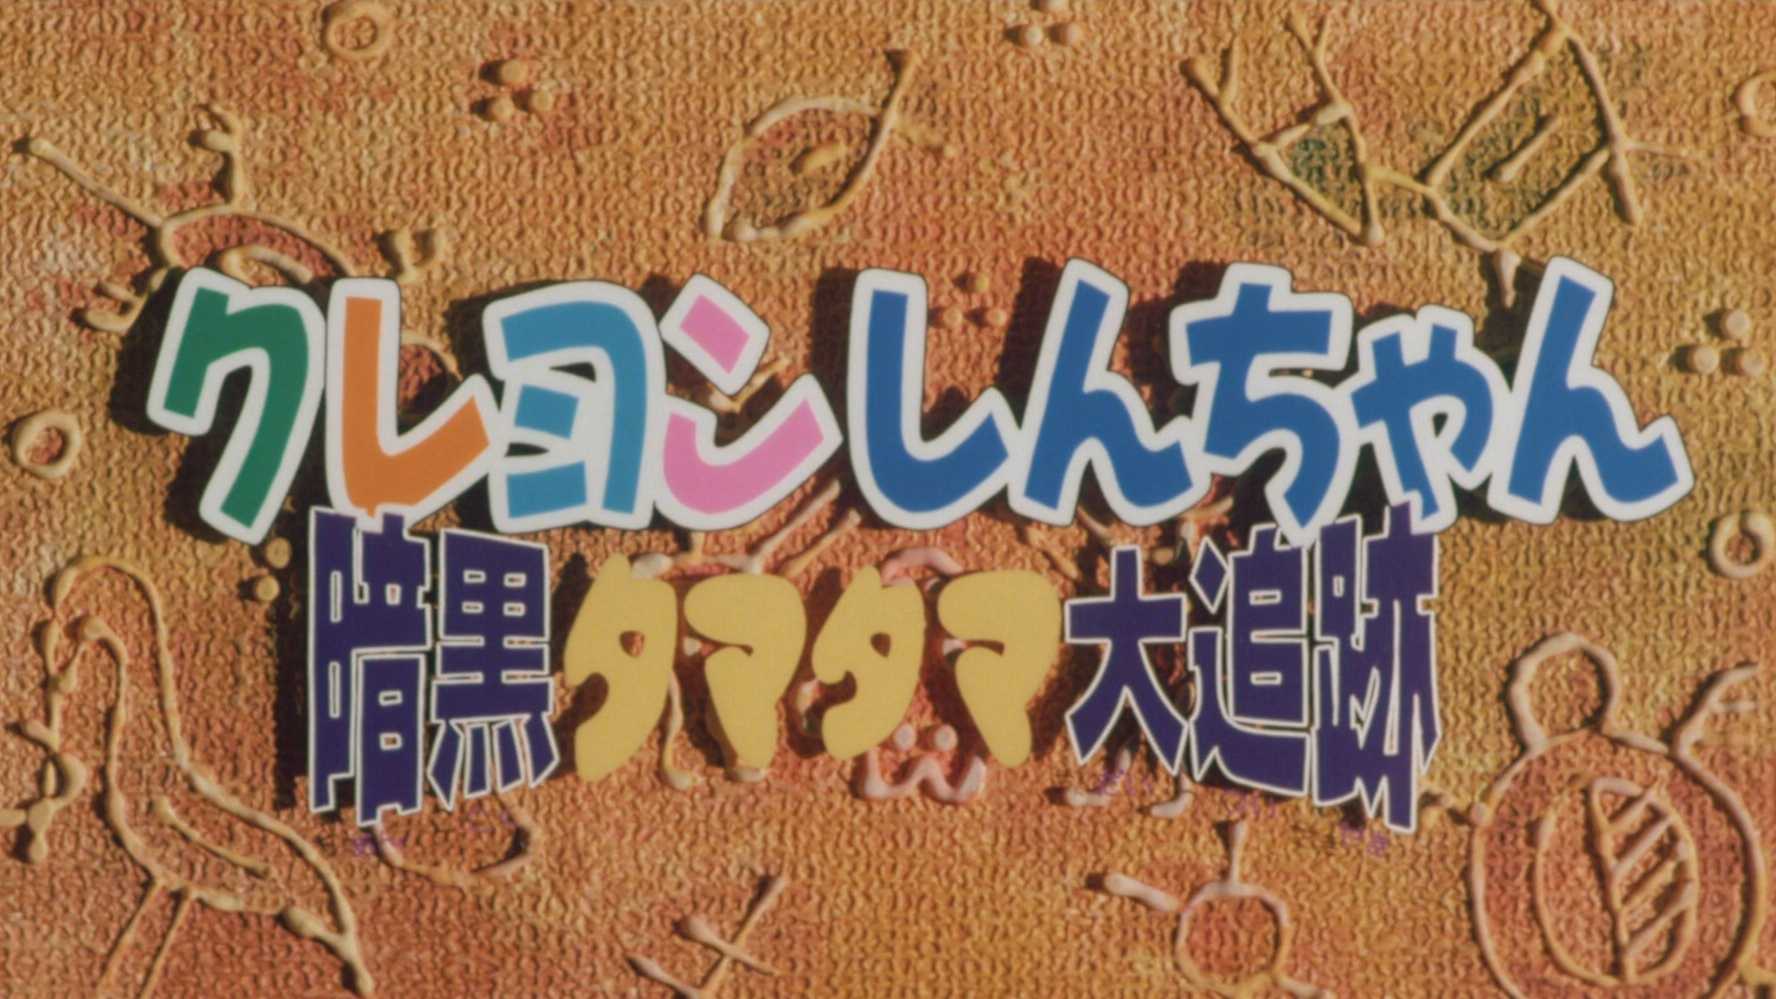 クレヨンしんちゃん 暗黒タマタマ大追跡 / クレヨンしんちゃん 暗黒タマタマ大追跡 (1997)